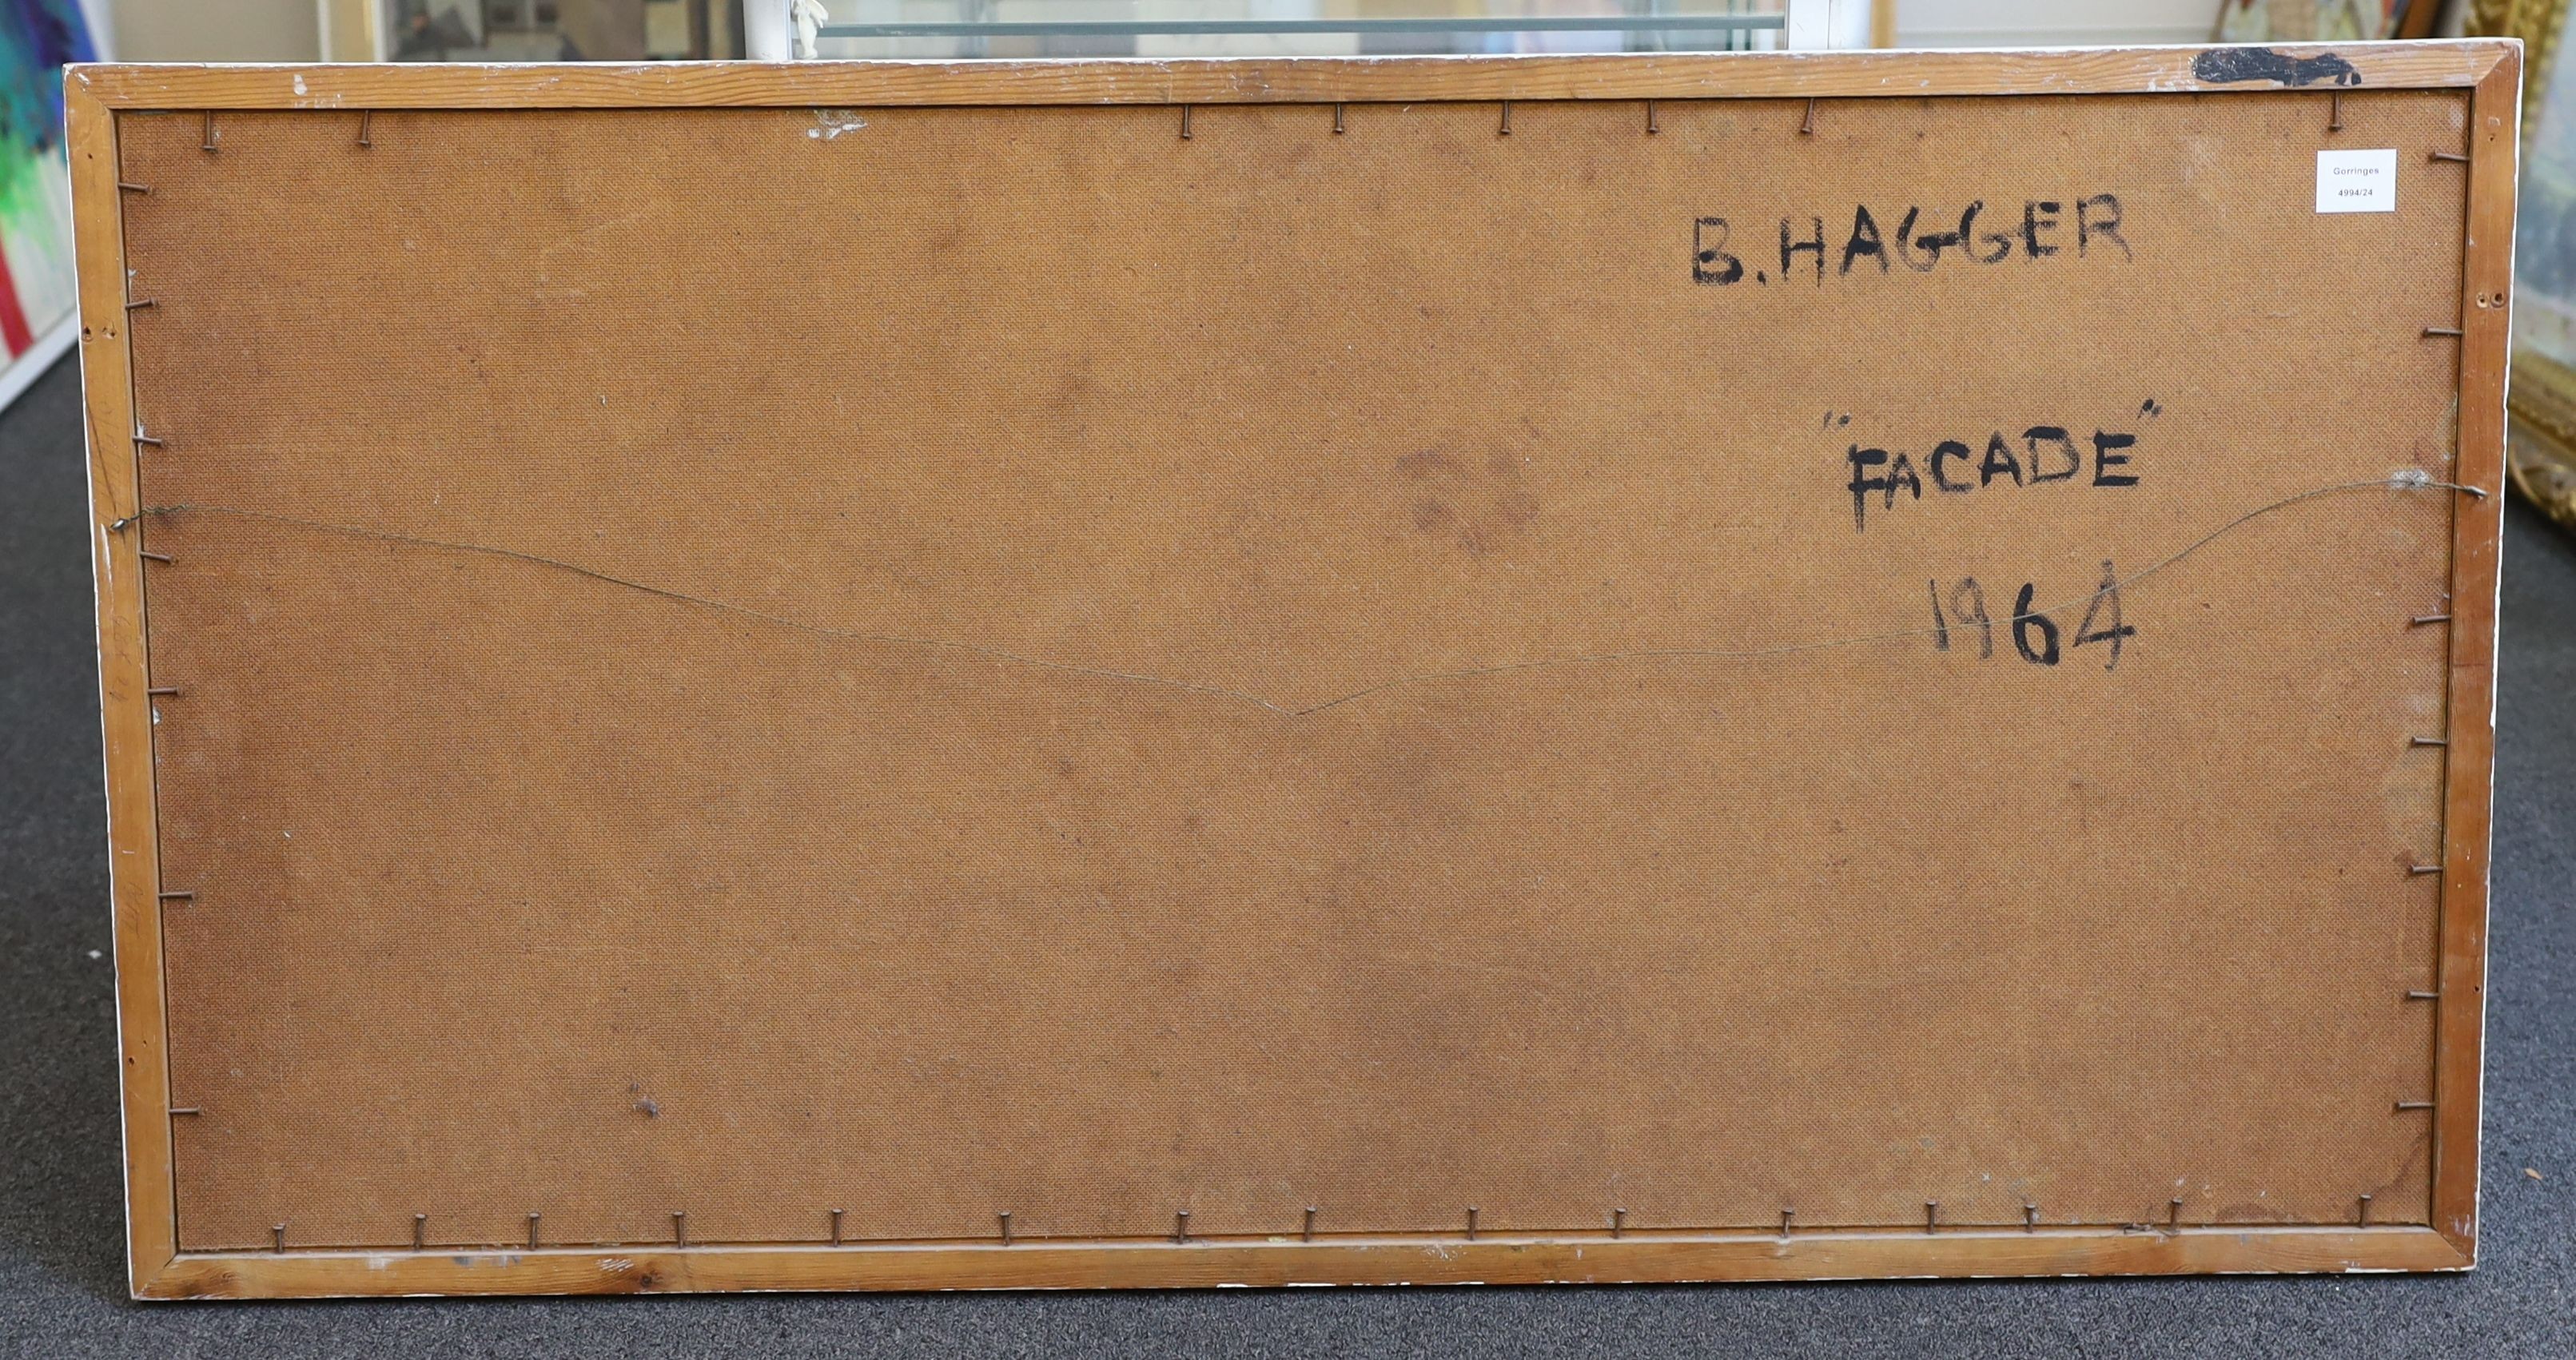 Brian Hagger (1935-2006), 'Façade', oil on board, 60 x 121cm